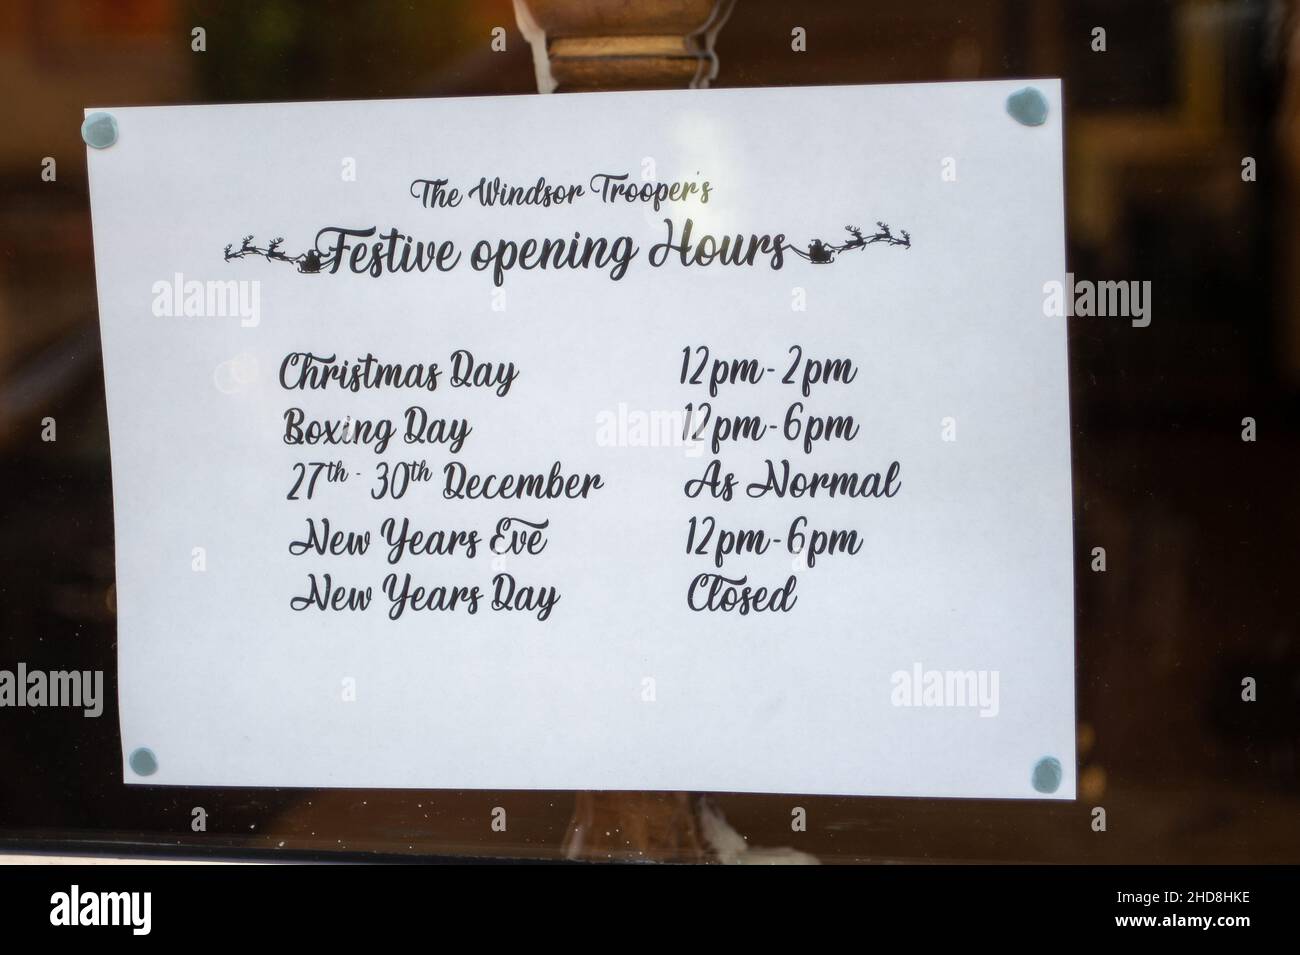 Windsor, Großbritannien. 31st. Dezember 2021. Der Tropper Pub in Windsor ist heute nur tagsüber geöffnet. Einige Veranstaltungsorte haben sich entschieden, heute Abend nicht zu öffnen. Quelle: Maureen McLean/Alamy Stockfoto